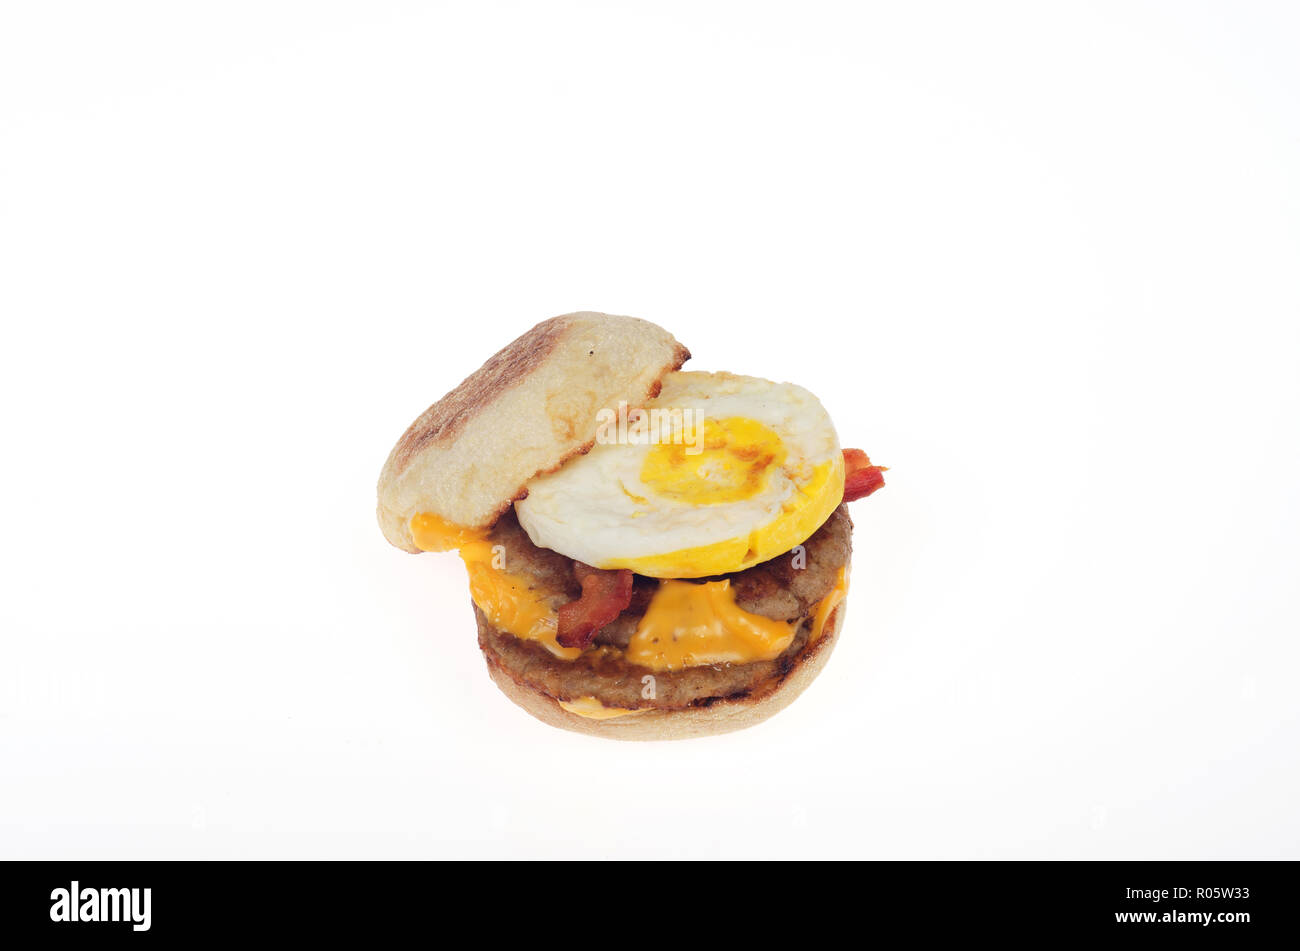 Pile de McDonald's sandwich Œuf McMuffin breakfast 2 galettes saucisses, 2 tranches de bacon, 2 tranches de fromage américain sur muffin anglais. Le 1 novembre, 2018 Banque D'Images